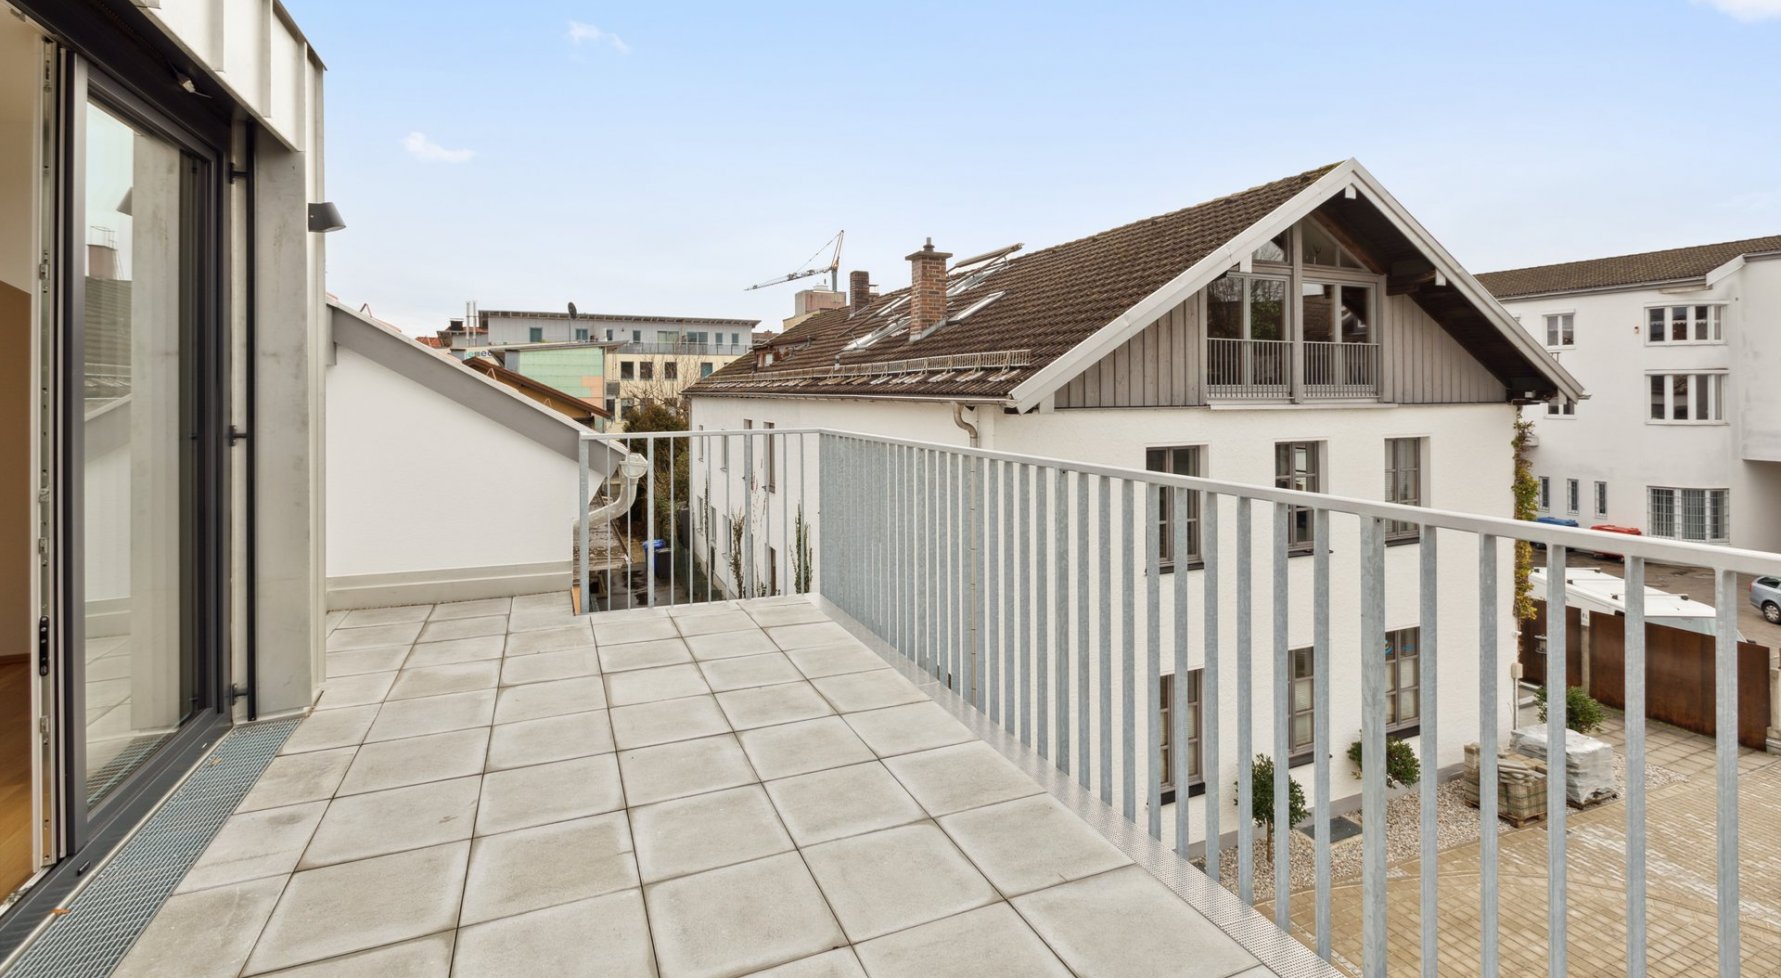 Property in 83395 Freilassing, Bayern: Erstbezug: Stilvolles Townhouse mit kleinem Gartenanteil  und 2 KFZ-Stellplätzen - picture 1